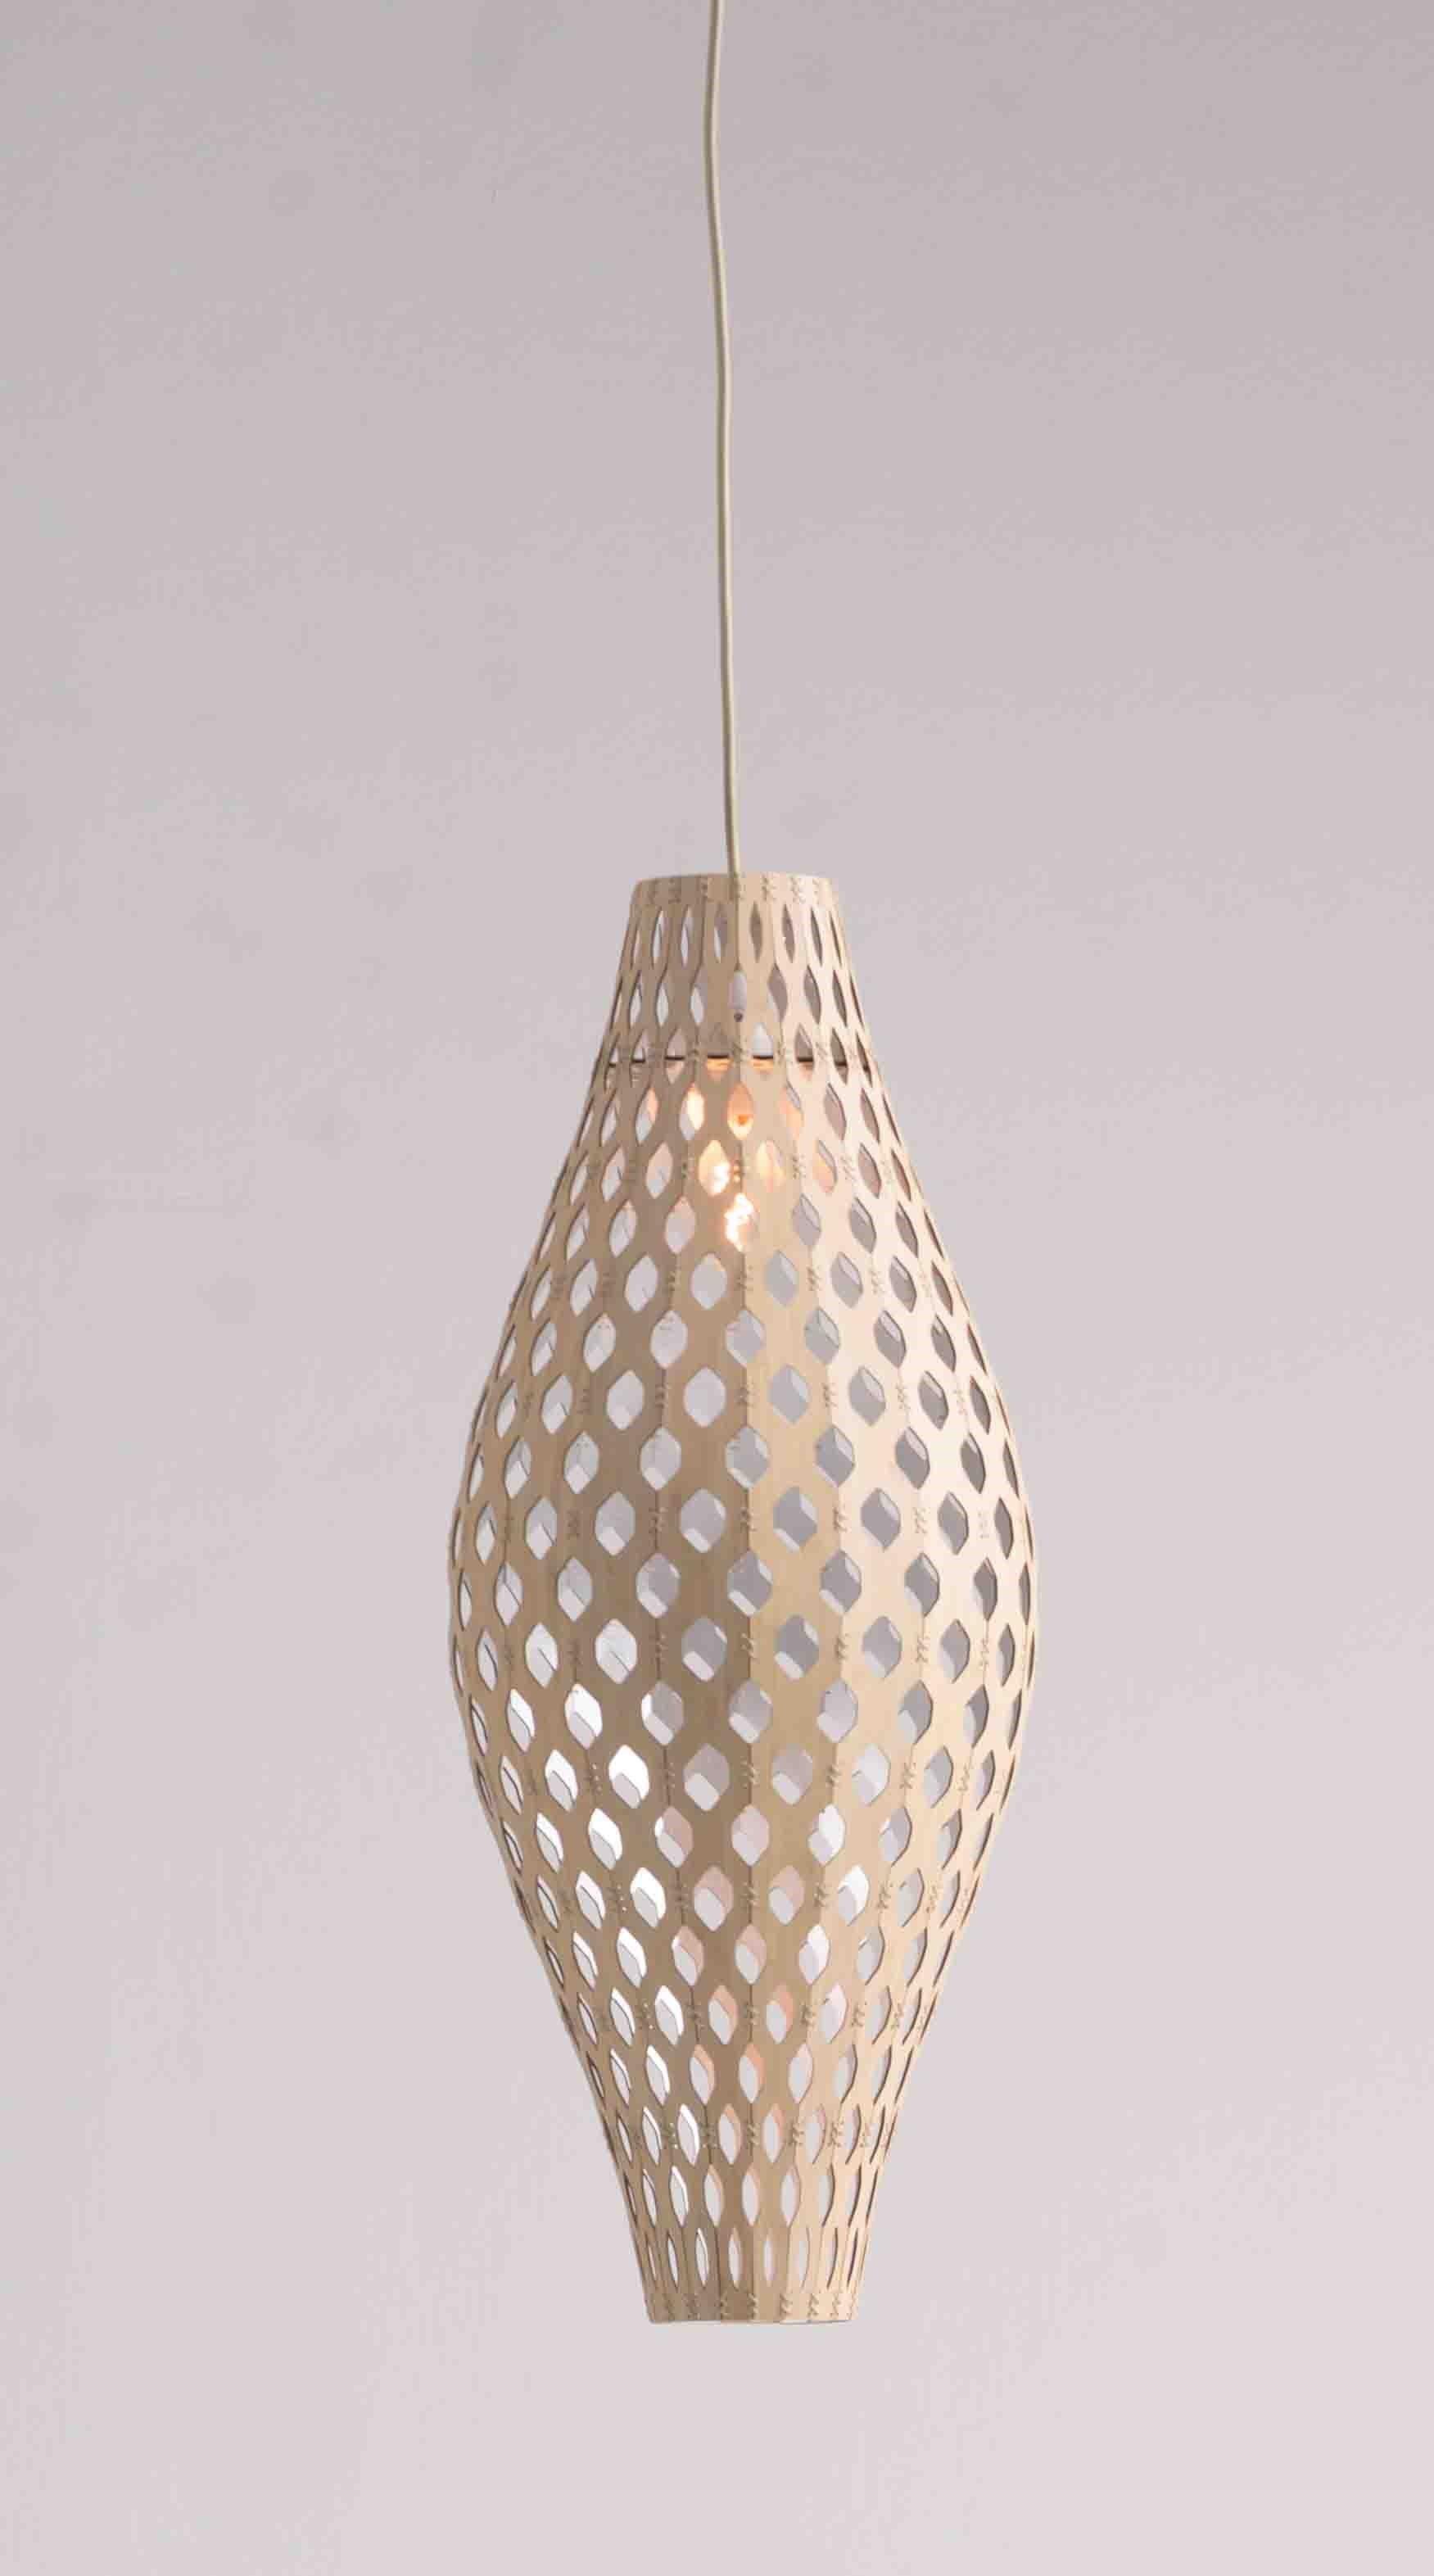 Panelitos Batz est un étonnant luminaire qui apporte une touche de sérénité naturelle à tout espace. Fabriqué en bambou durable, ce plafonnier respire la chaleur, l'élégance et un style respectueux de l'environnement, transformant votre pièce en une